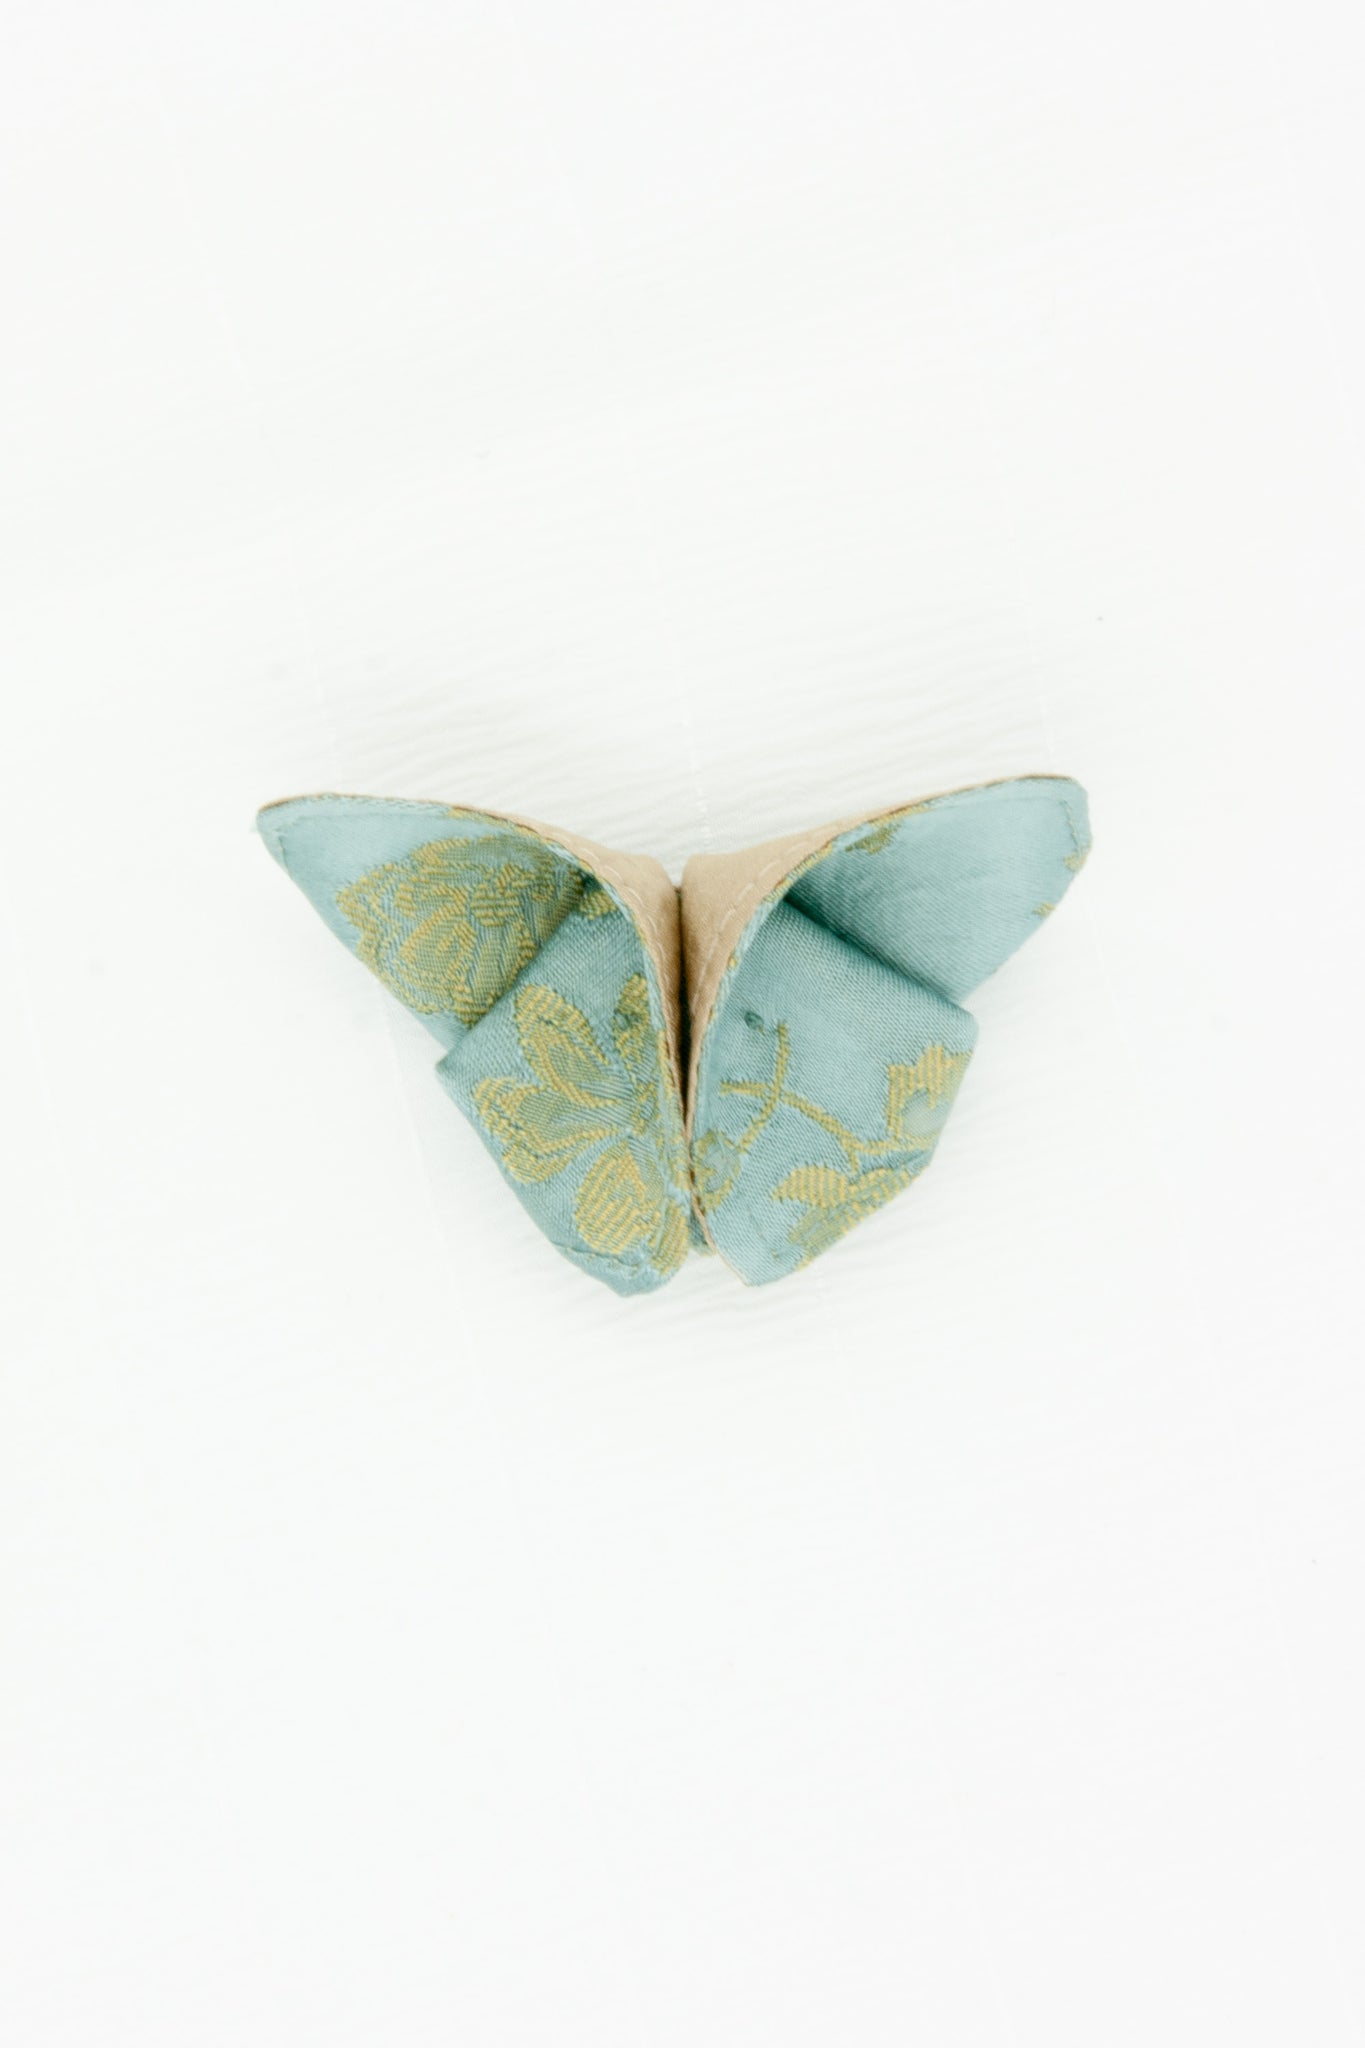 Butterfly Brooch in Robin's Egg Blue Silk Jacquard